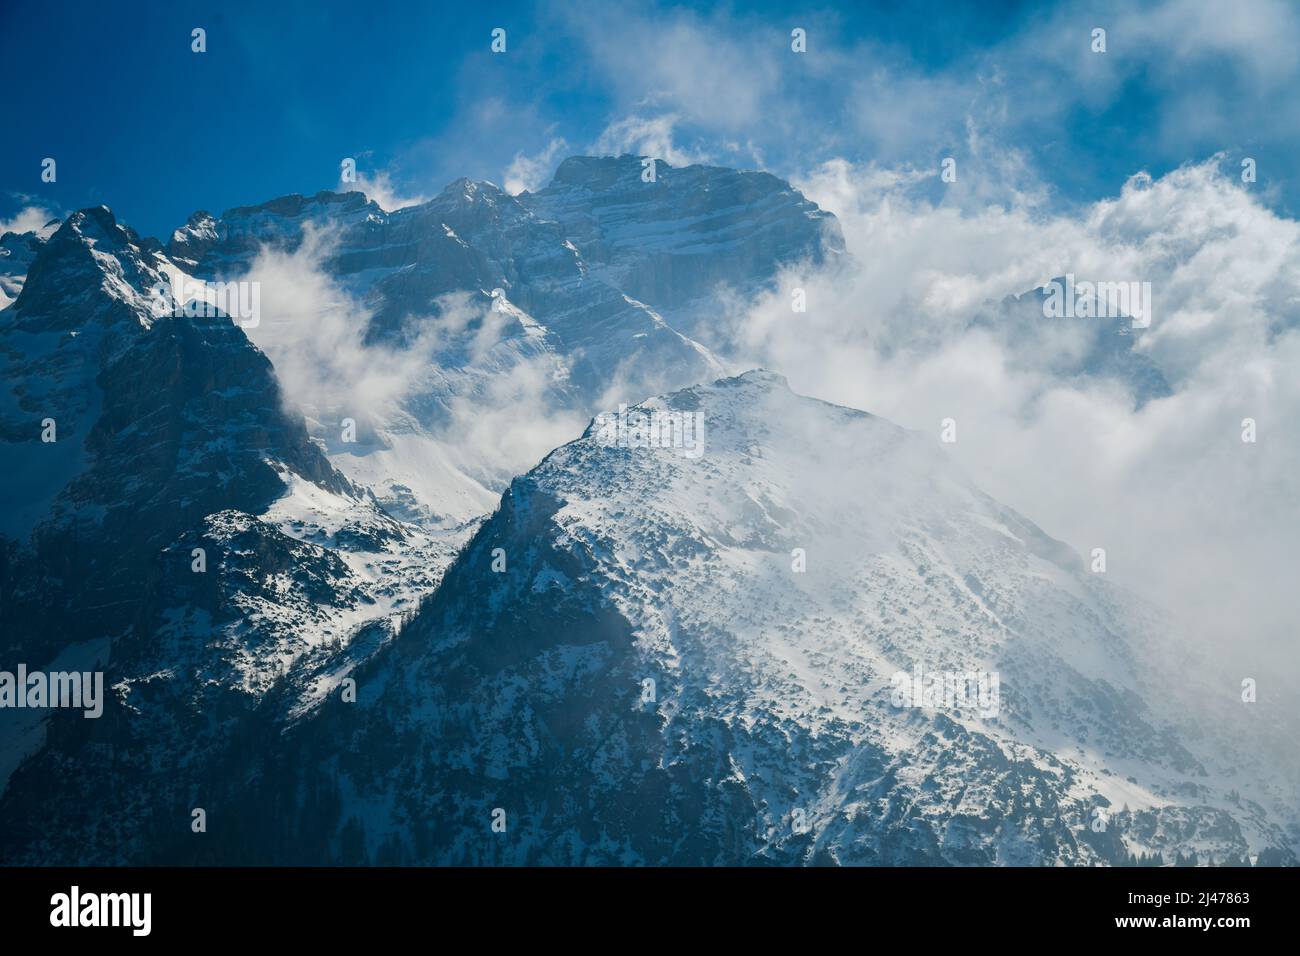 Fantastico paesaggio invernale alla stazione sciistica di Pinzolo in Val Rendena in Trentino nelle Alpi Italiane settentrionali, Italia Europa. Foto Stock